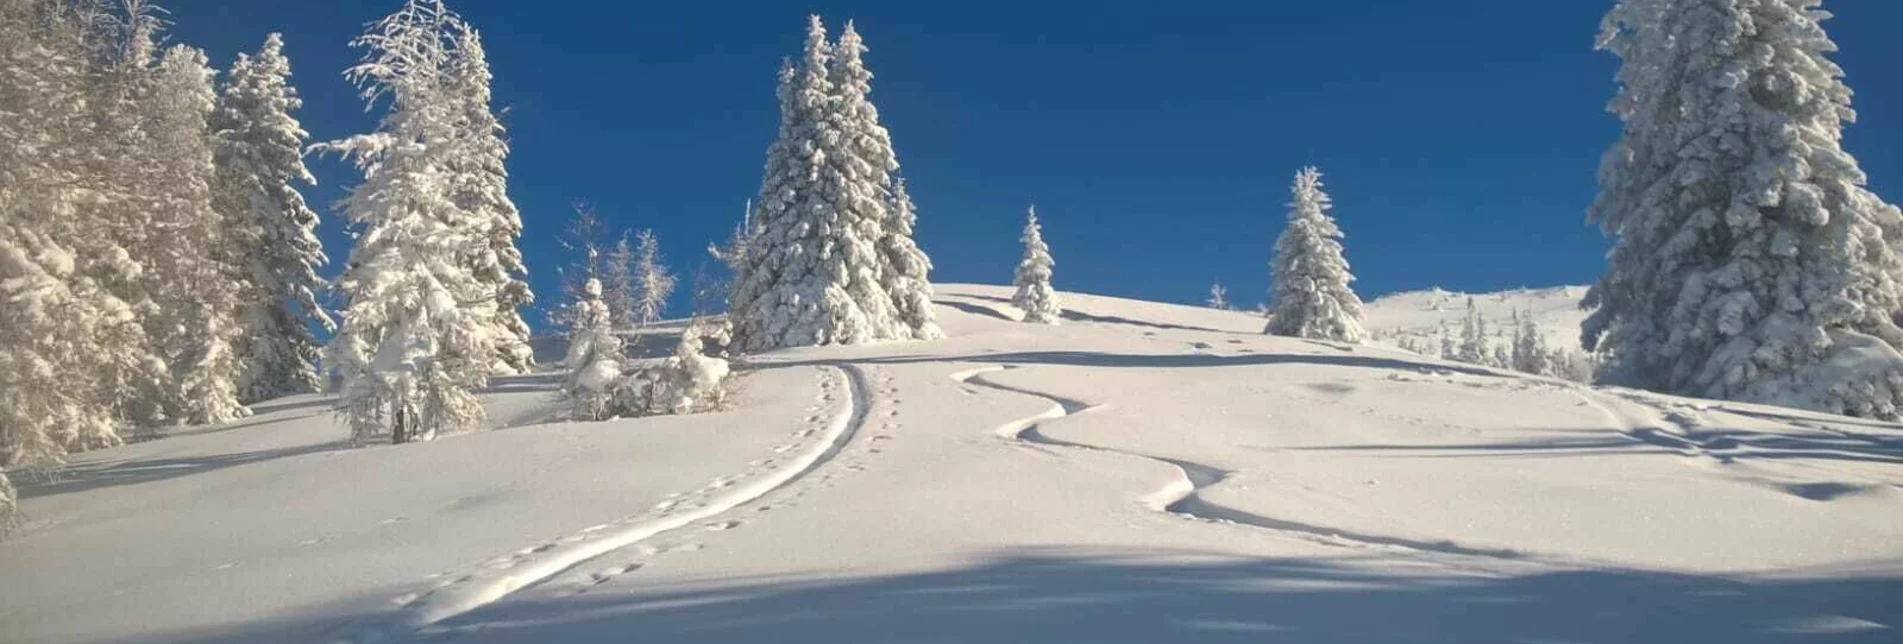 Skitour Gstoder ab Seetal - Touren-Impression #1 | © Tourismusverband Region Murau